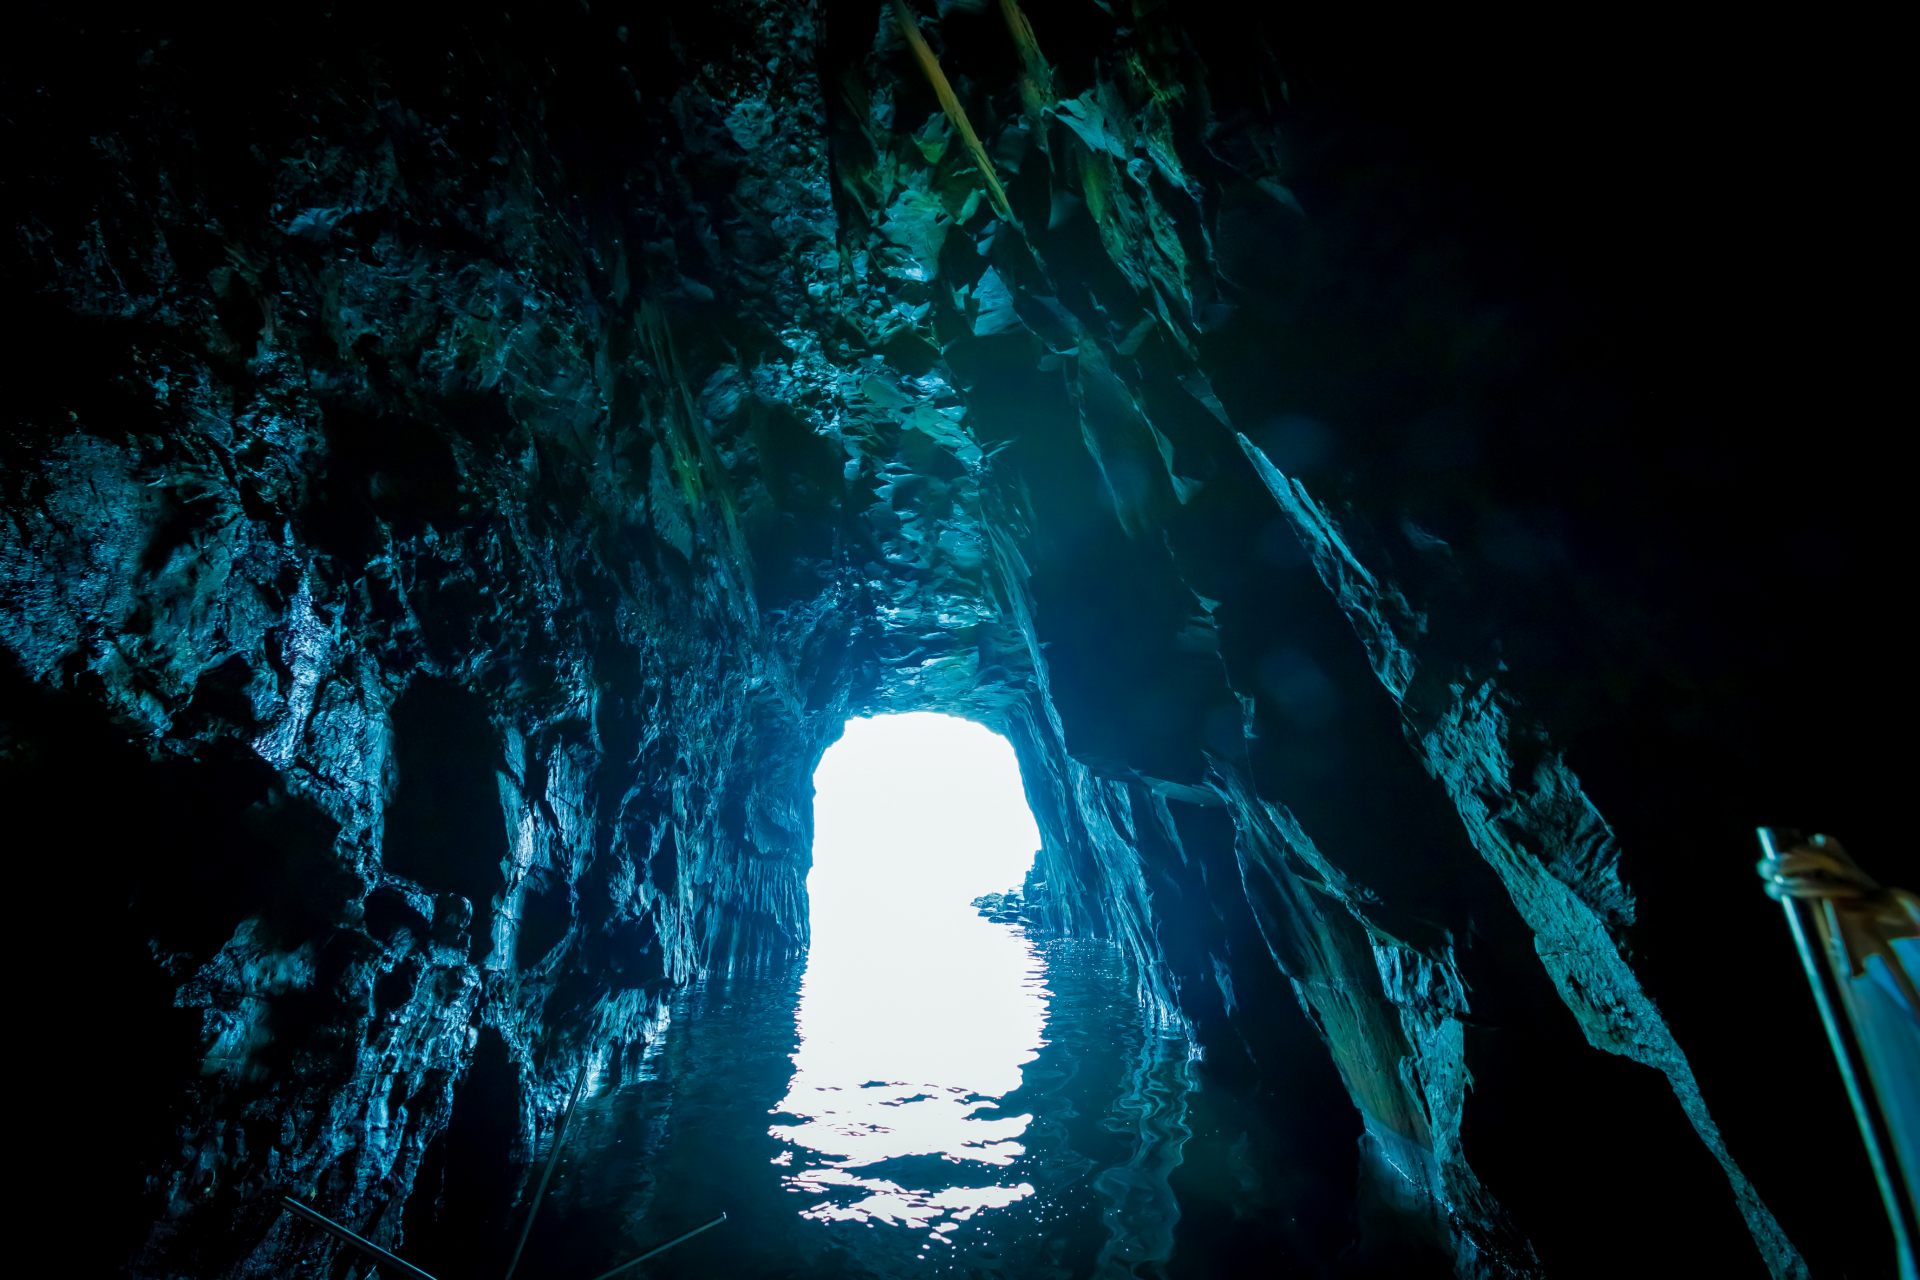 Même avec un mini-bateau, l'entrée de la grotte est difficile à franchir. Mais une fois à l'intérieur de la grotte, une vue magnifique vous entourera.